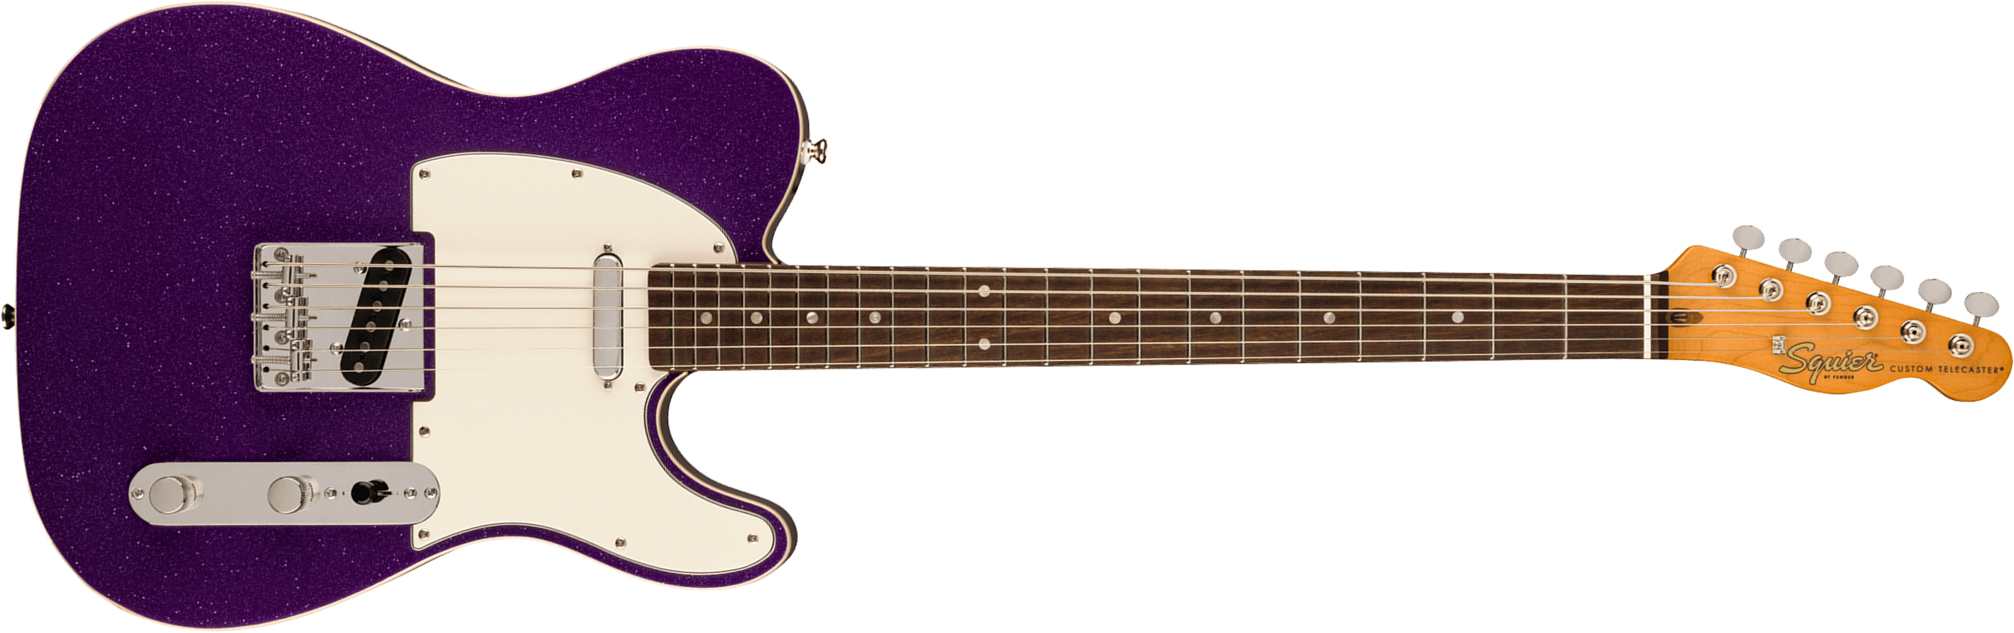 Squier Tele Baritone Custom Classic Vibe Fsr 2s Ht Lau - Purple Sparkle - Bariton elektrische gitaar - Main picture